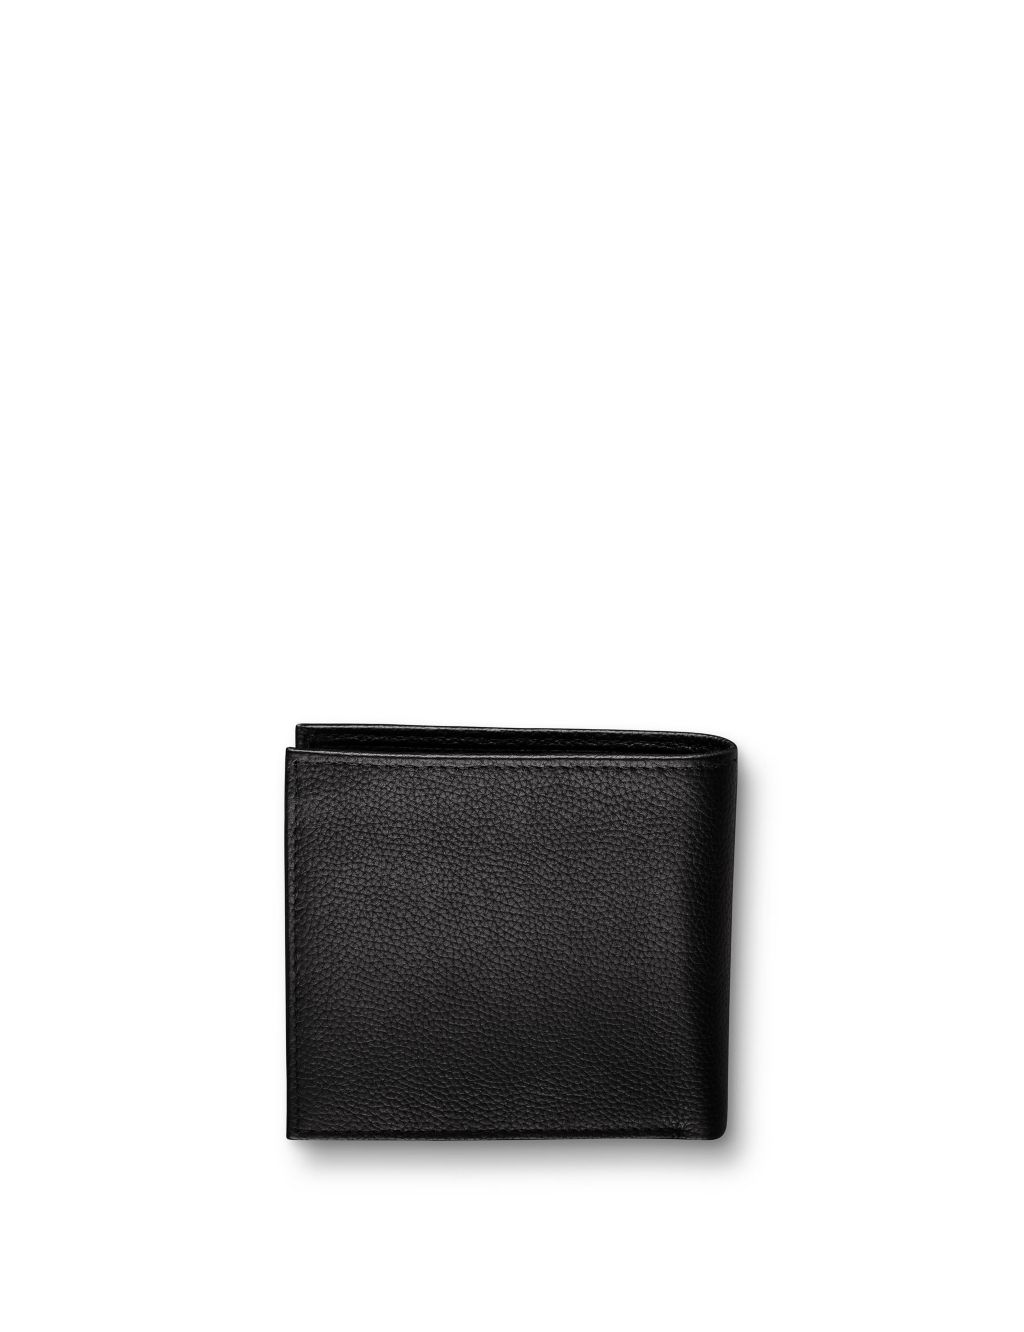 Buy Leather Pebble Grain Bi-fold Wallet | Charles Tyrwhitt | M&S